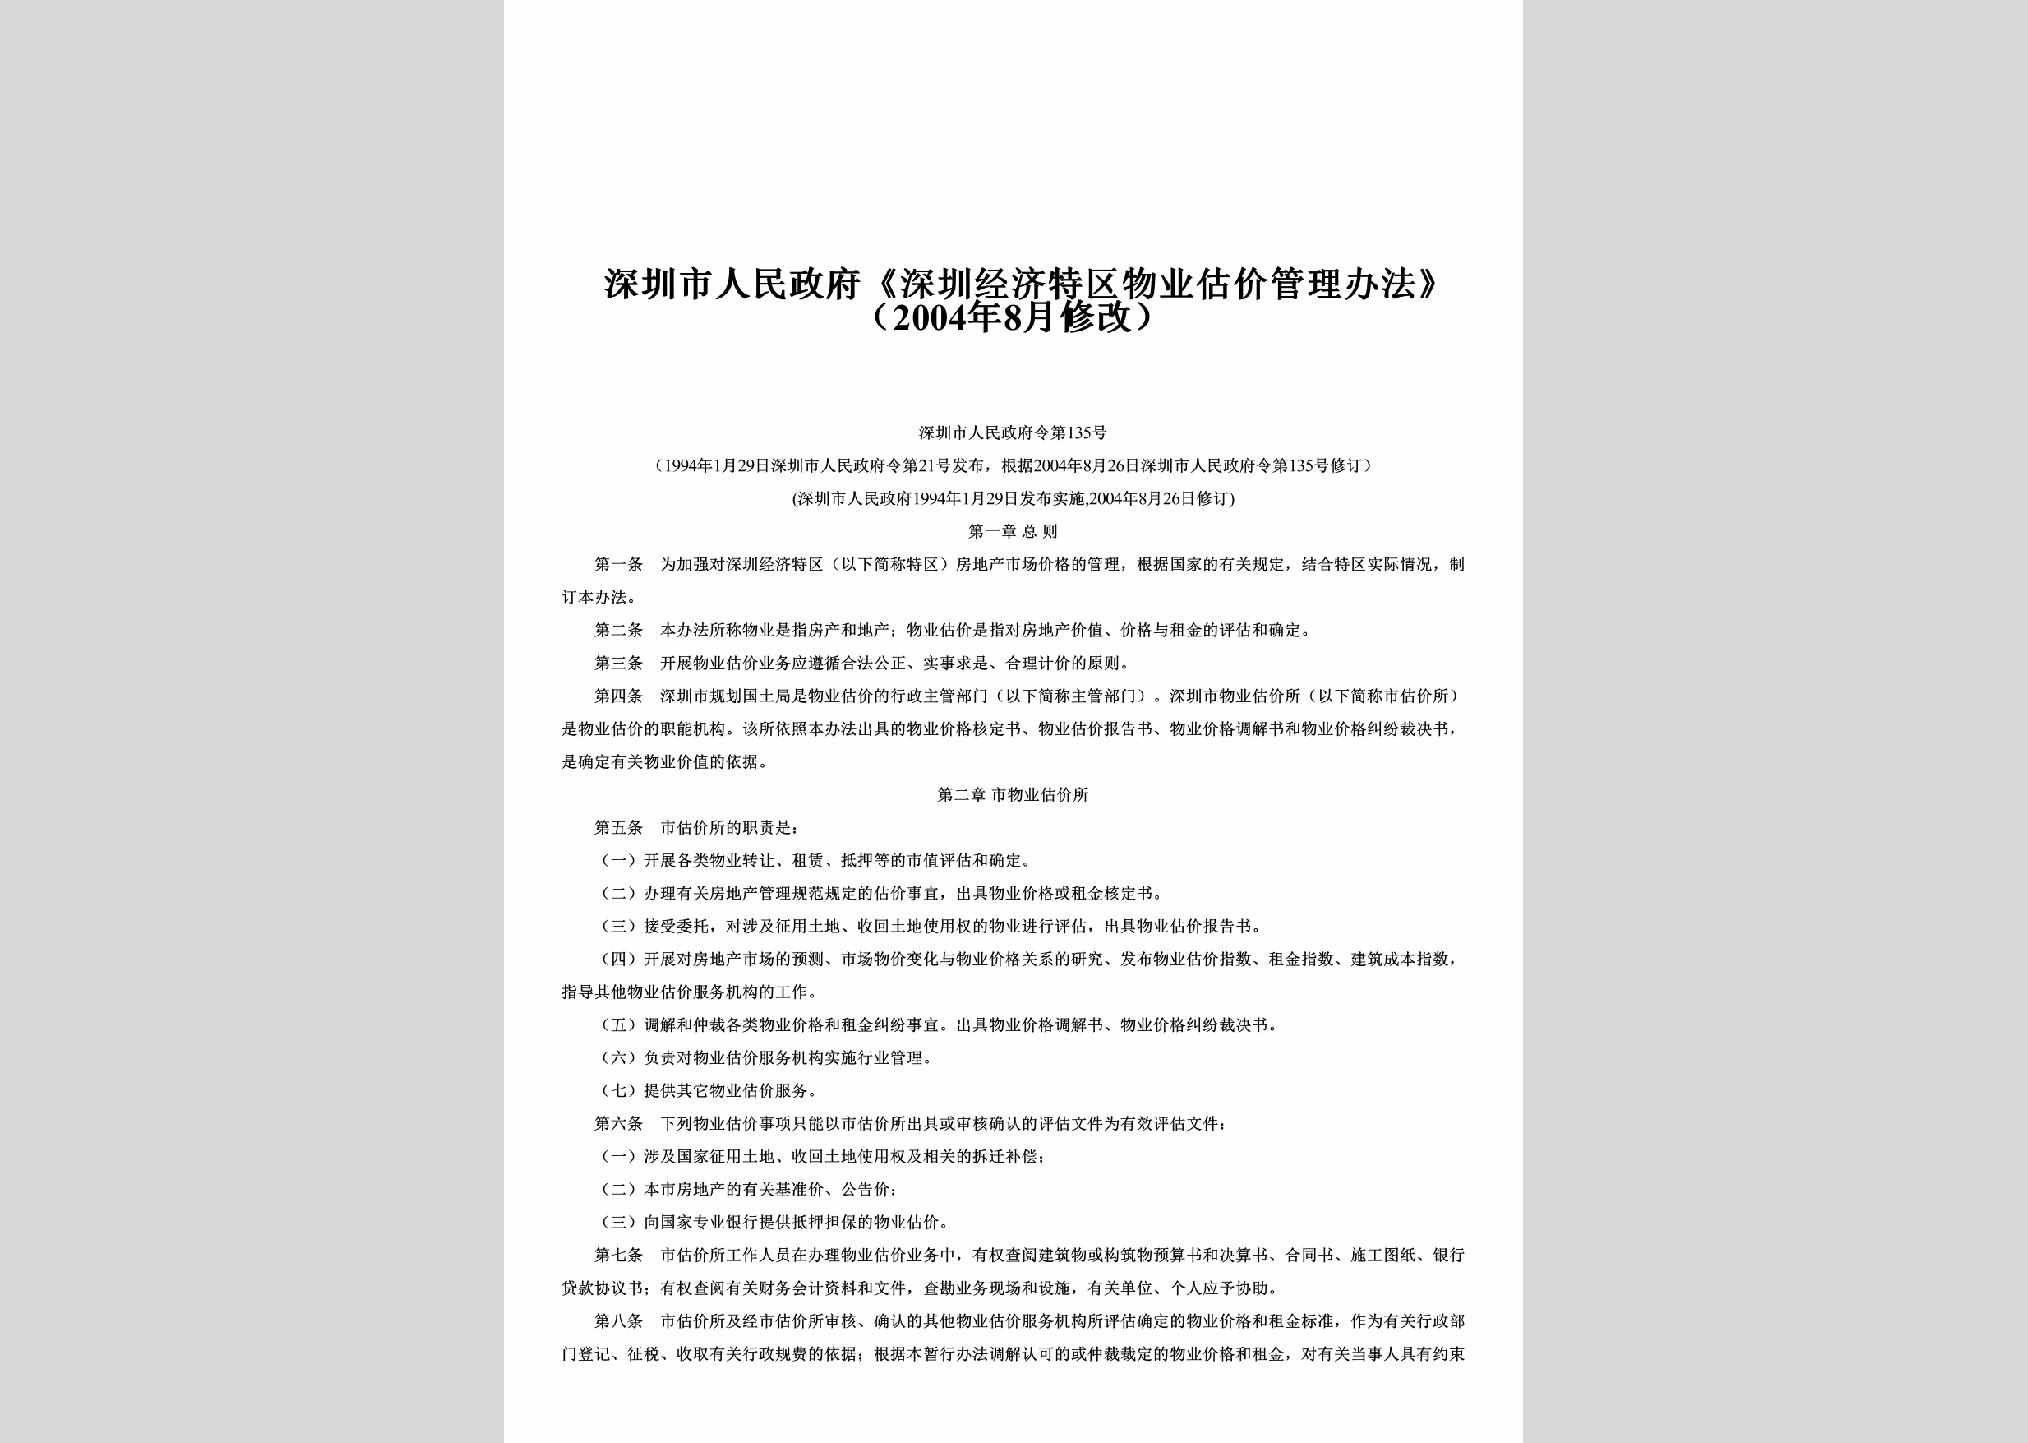 SZSRM-2004-135：《深圳经济特区物业估价管理办法》（2004年8月修改）